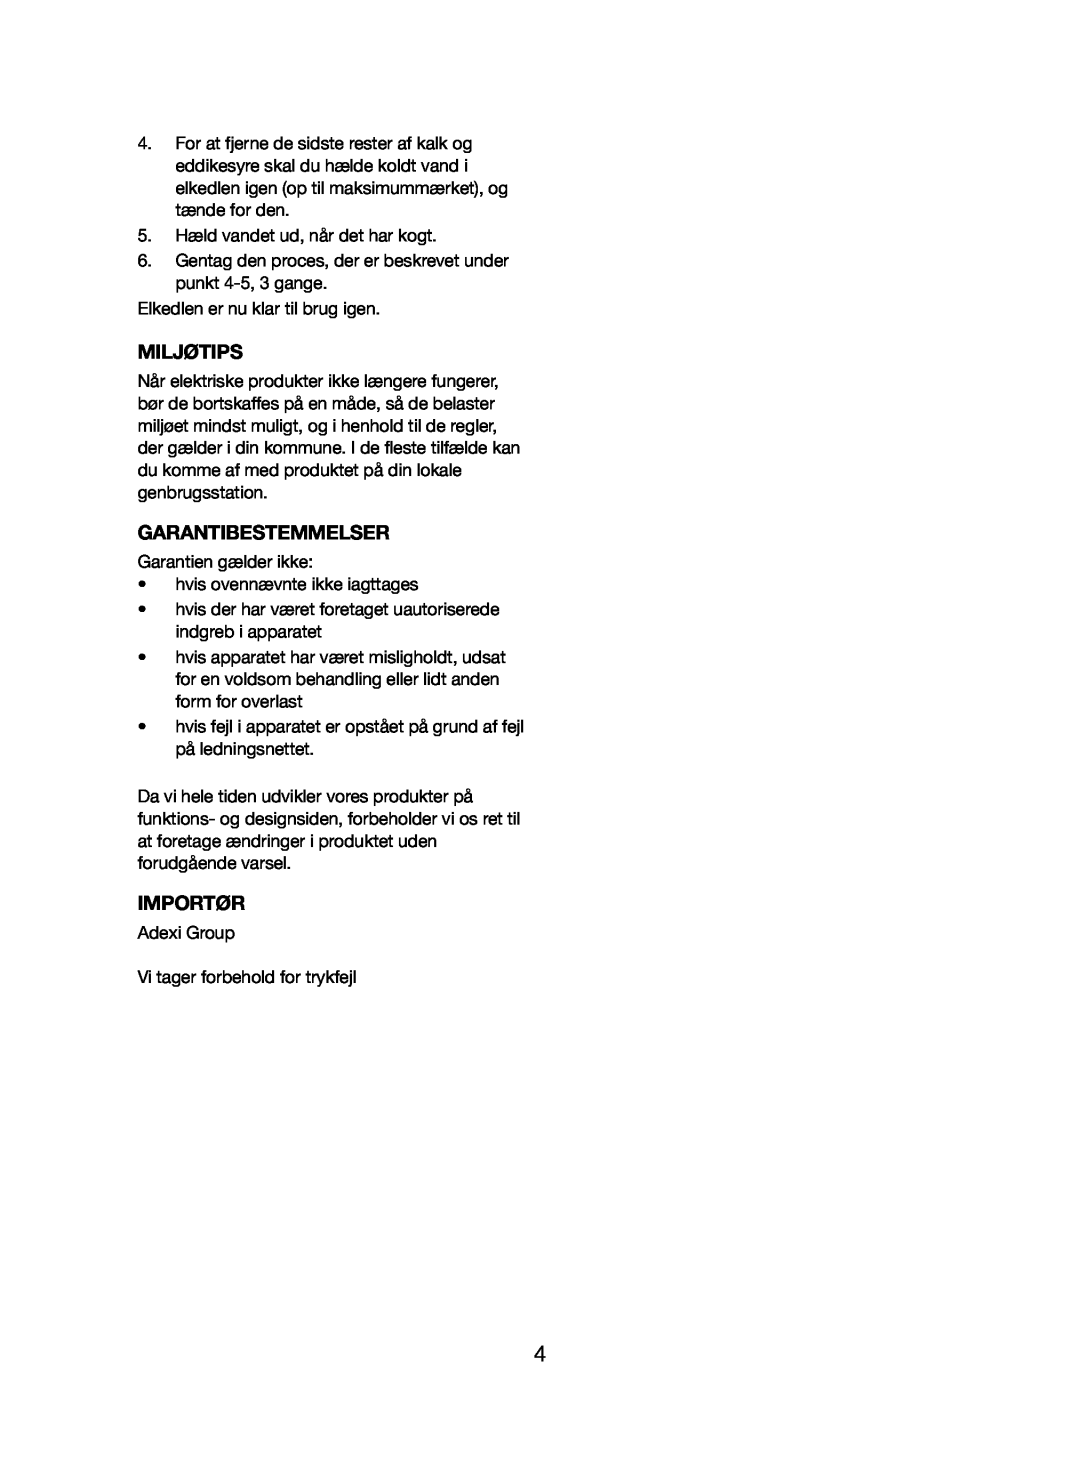 Melissa 245-031 manual Miljøtips, Garantibestemmelser, Importør 